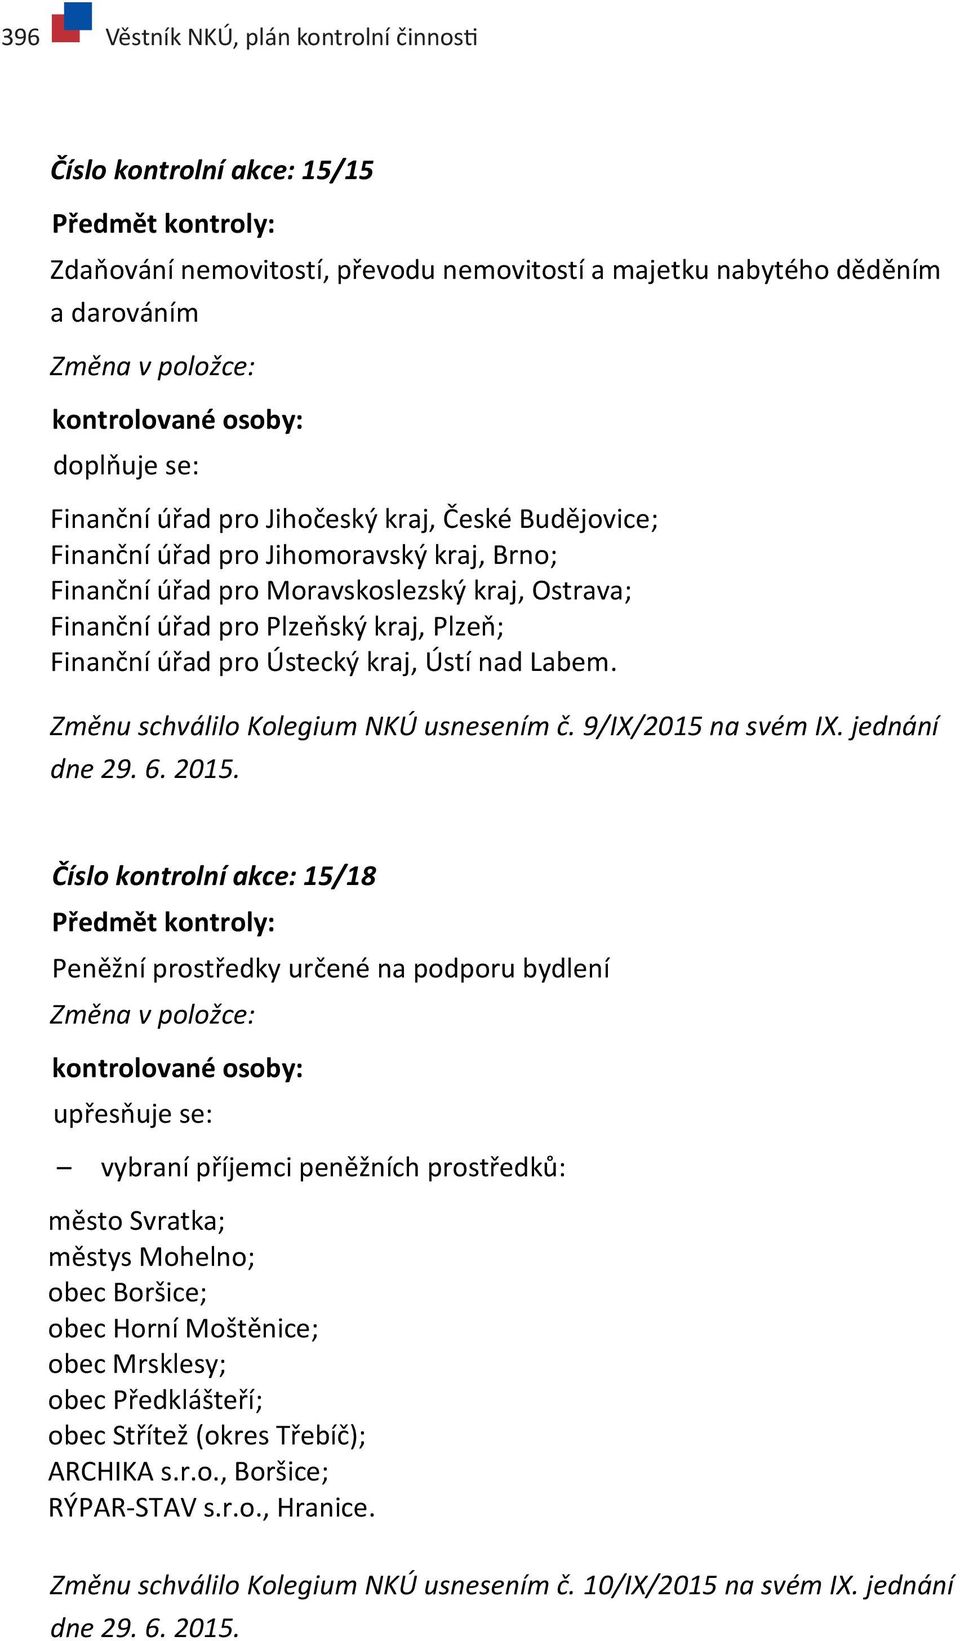 Plzeň; Finanční úřad pro Ústecký kraj, Ústí nad Labem. Změnu schválilo Kolegium NKÚ usnesením č. 9/IX/2015 na svém IX. jednání dne 29. 6. 2015.